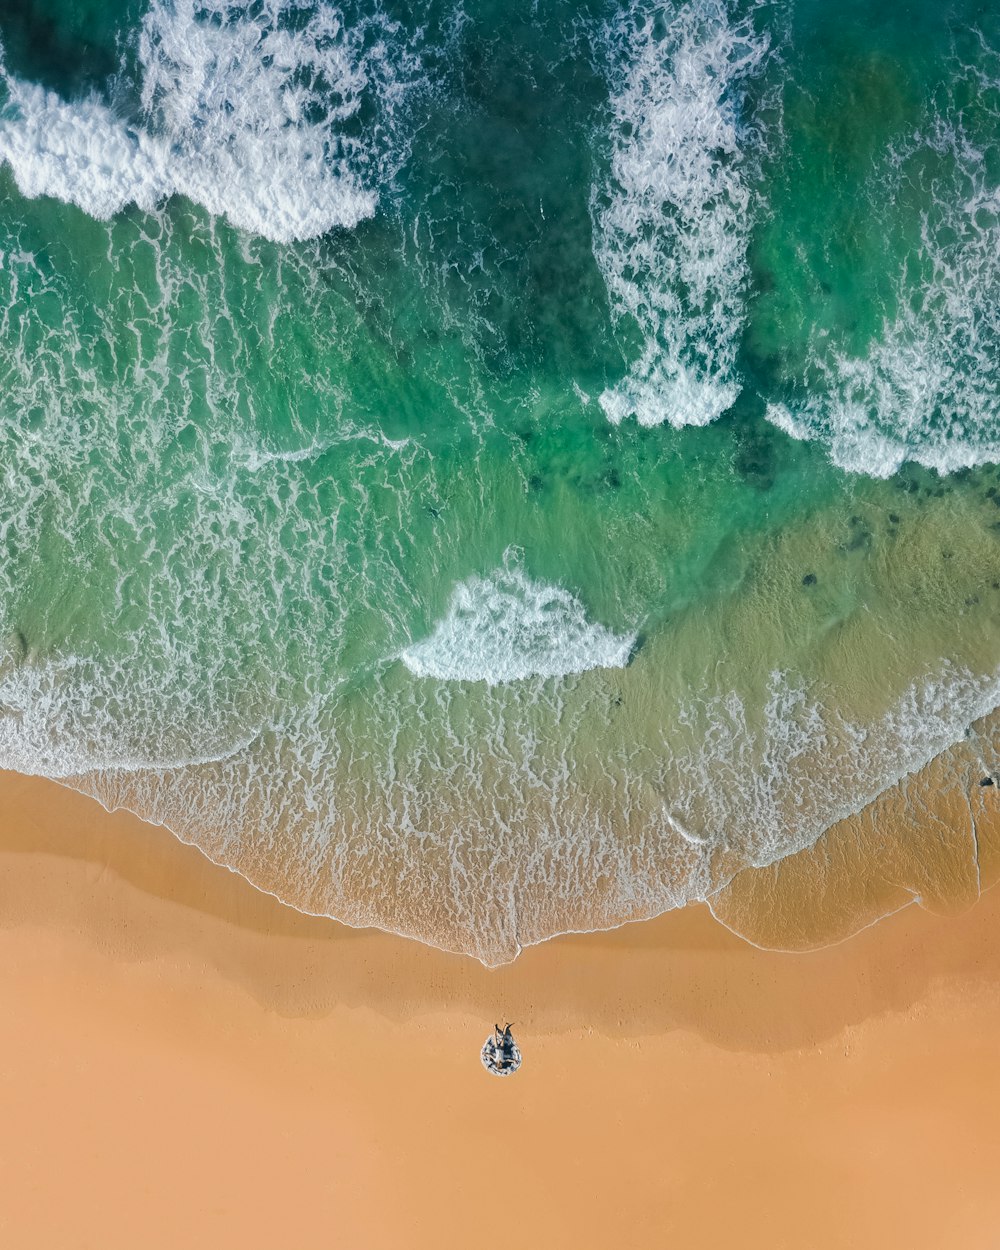 Photographie de vue de dessus de sable brun sur la plage avec de l’eau de mer turquoise pendant la journée